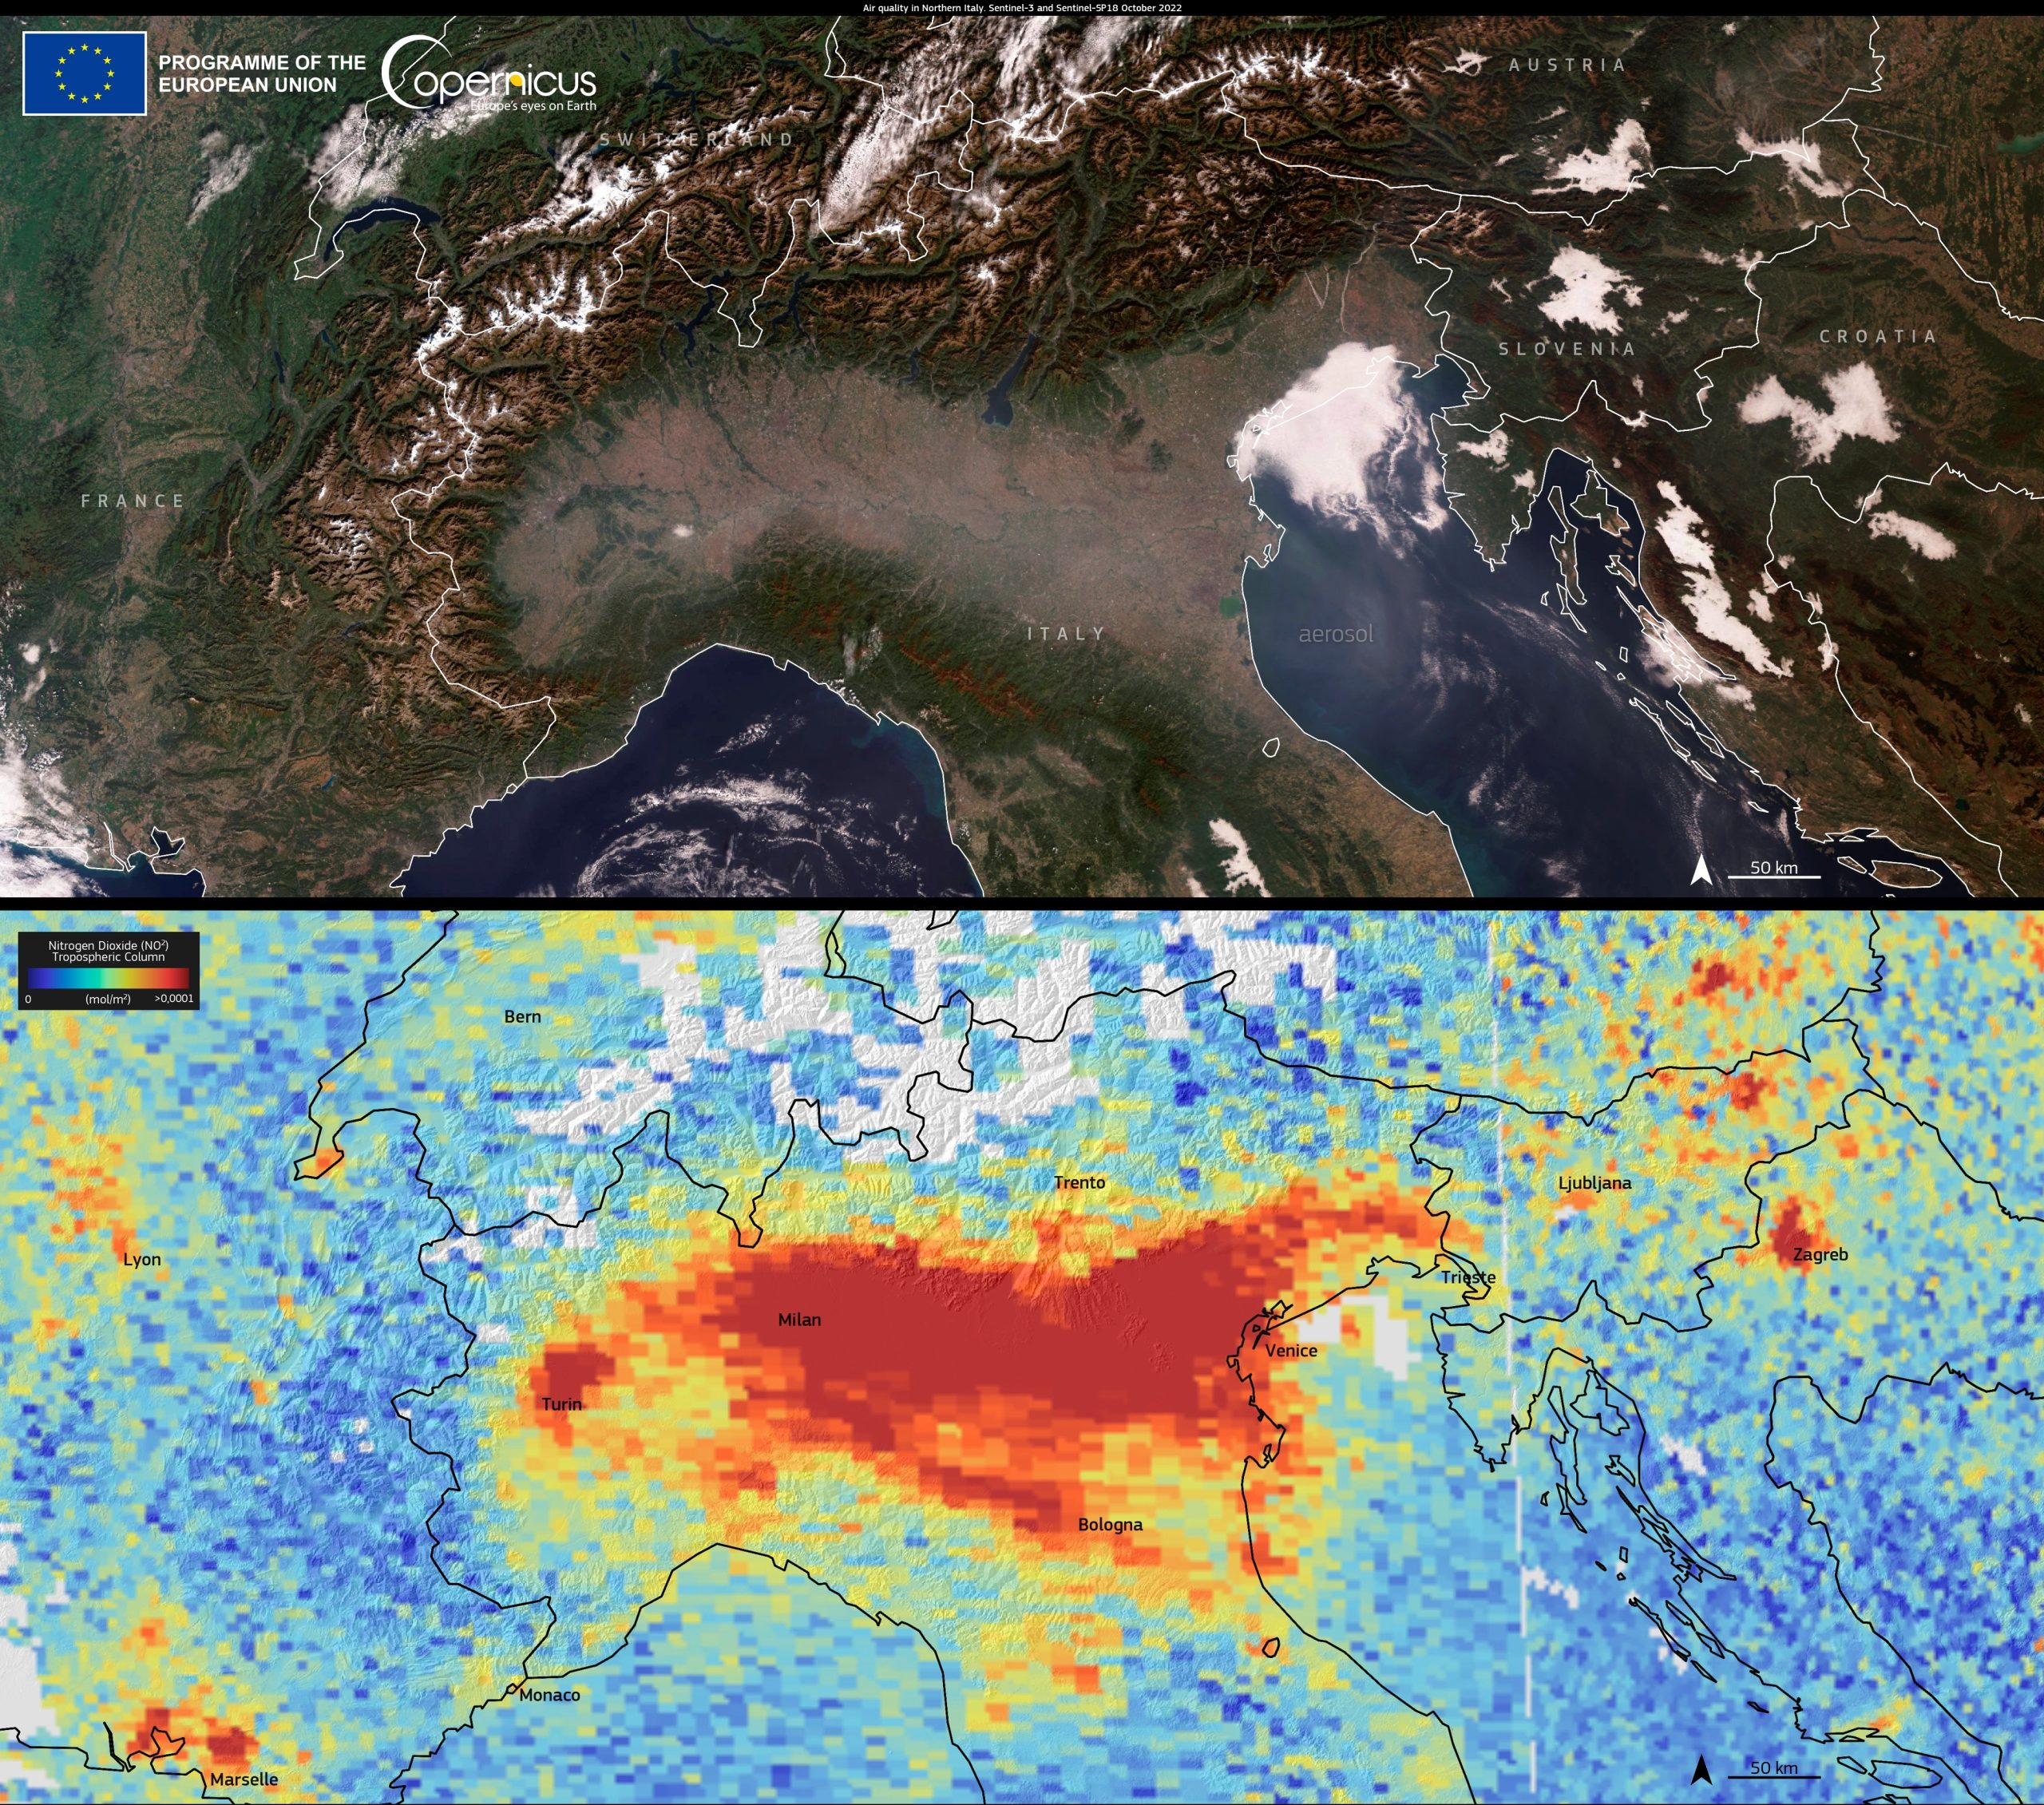 L’autunno peggiora la qualità dell’aria nel bacino Padano: le immagini dallo spazio